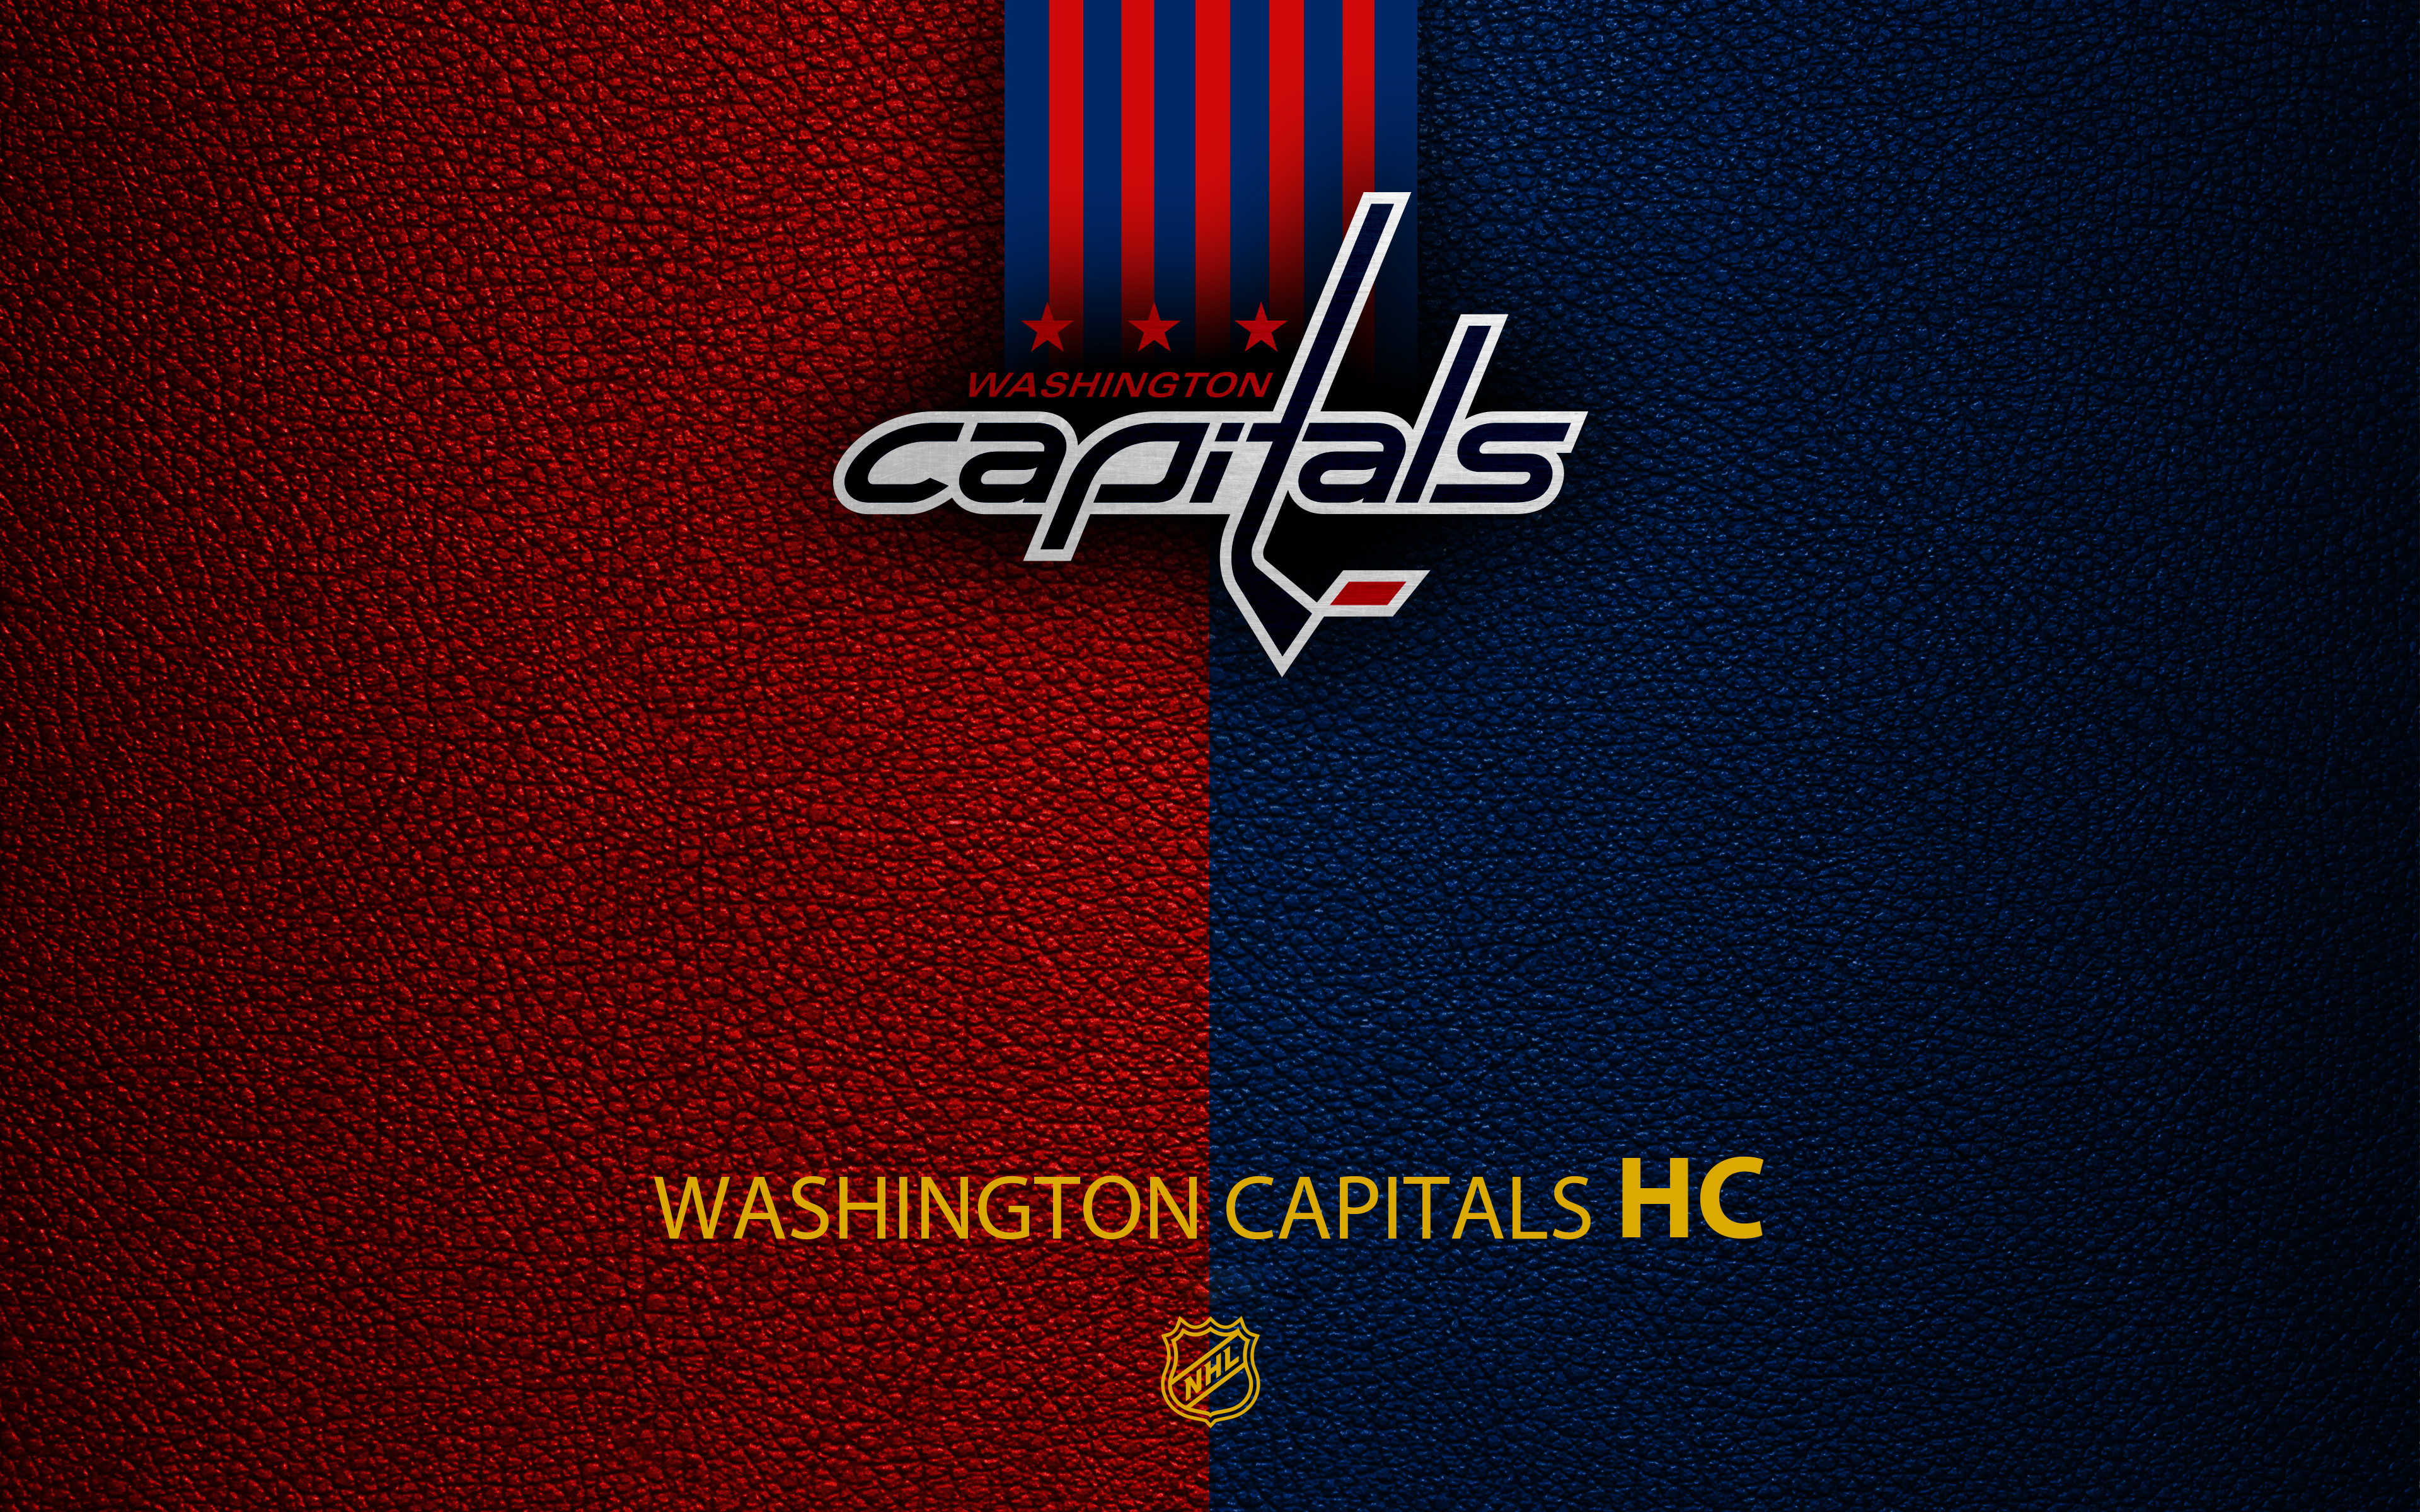 Washington Capitals Wallpapers - Top 20 Best Washington Capitals Wallpapers  [ HQ ]